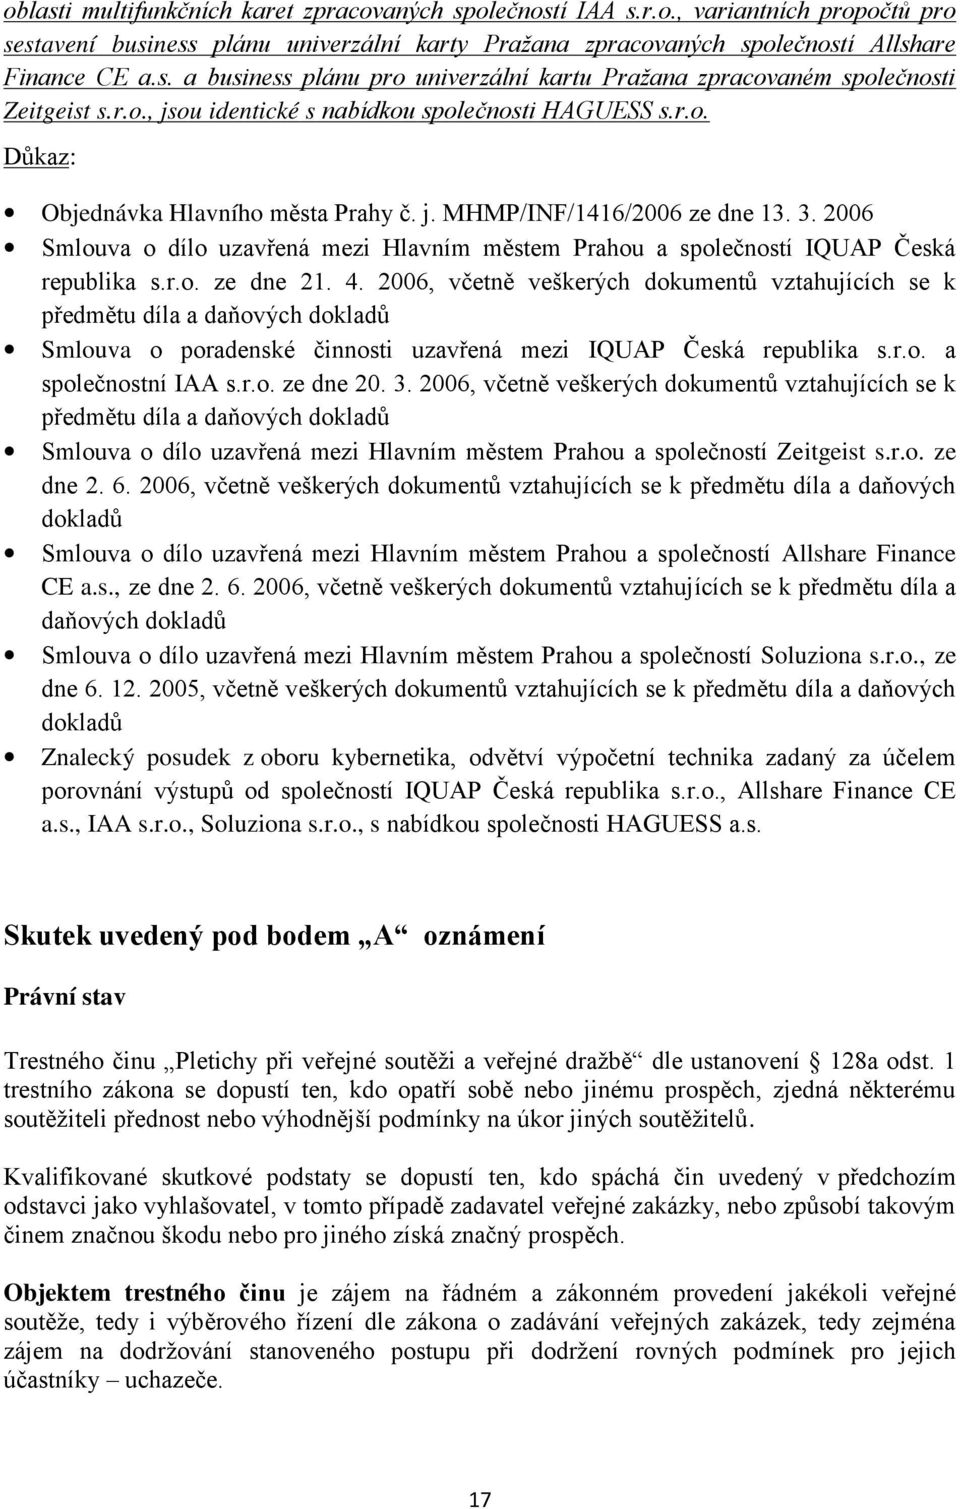 2006 Smlouva o dílo uzavřená mezi Hlavním městem Prahou a společností IQUAP Česká republika s.r.o. ze dne 21. 4.